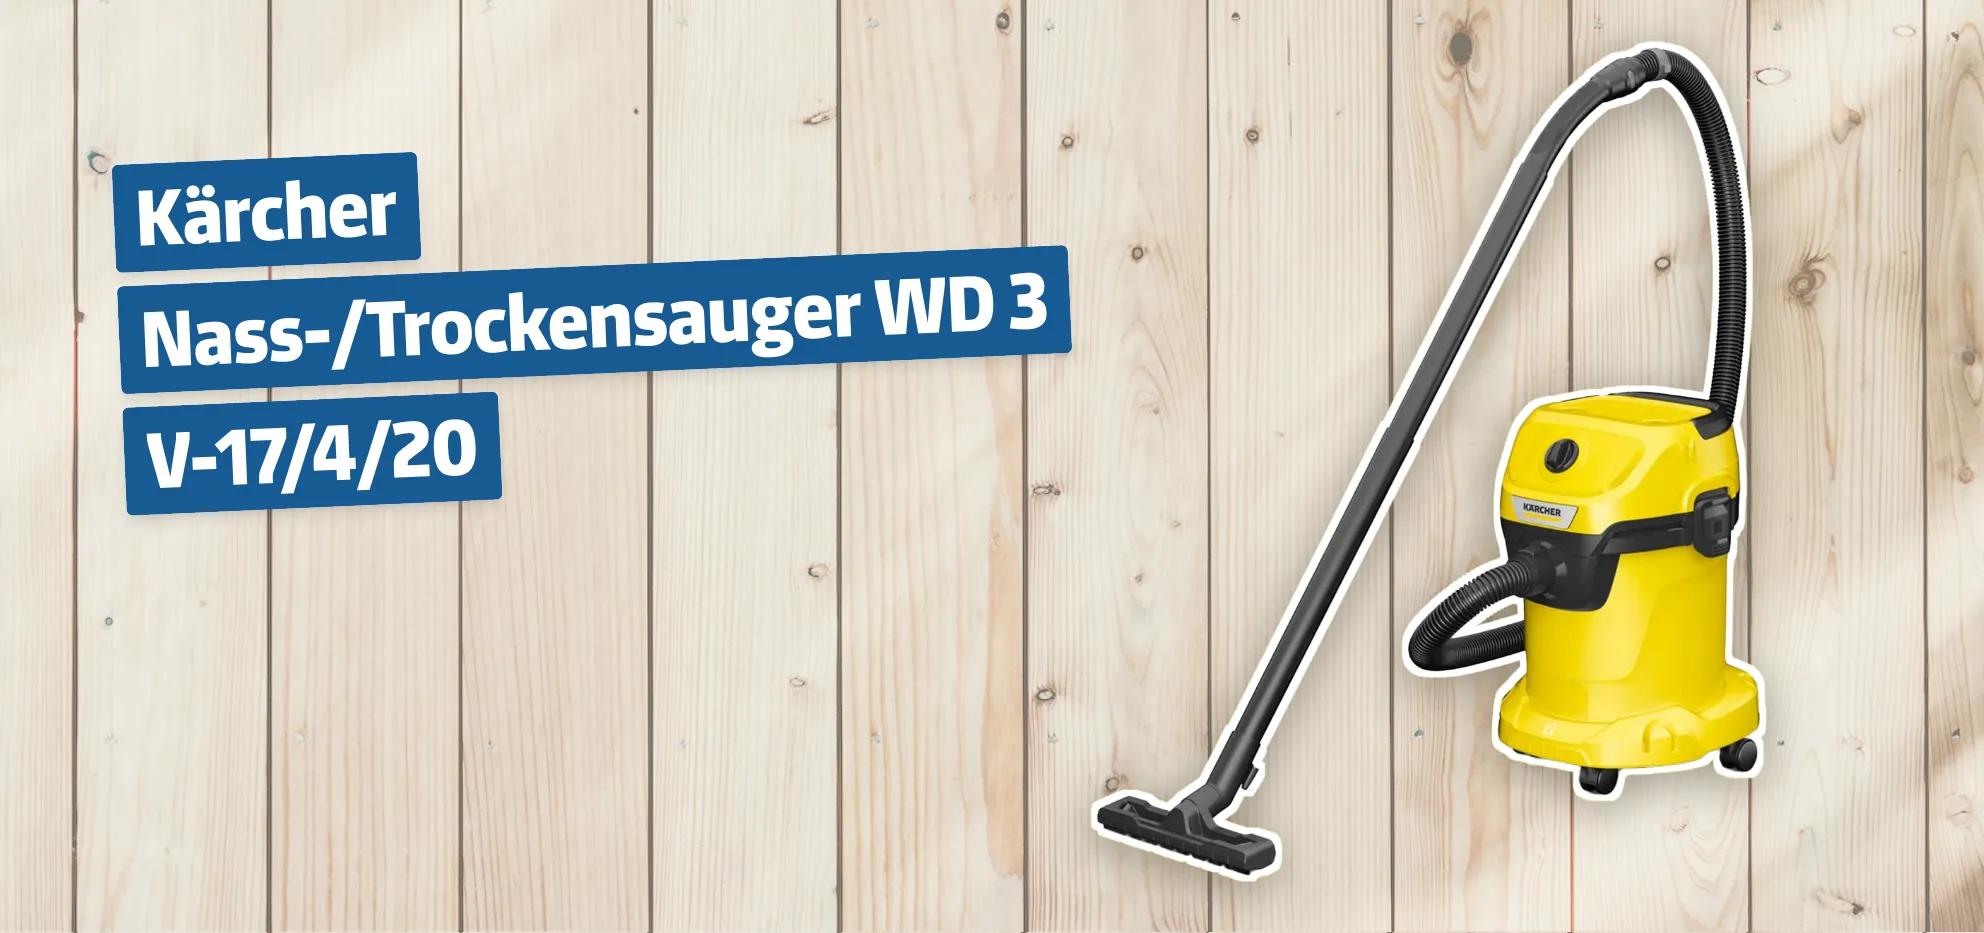 Kärcher Nass-/Trockensauger WD 3 V-17/4/20